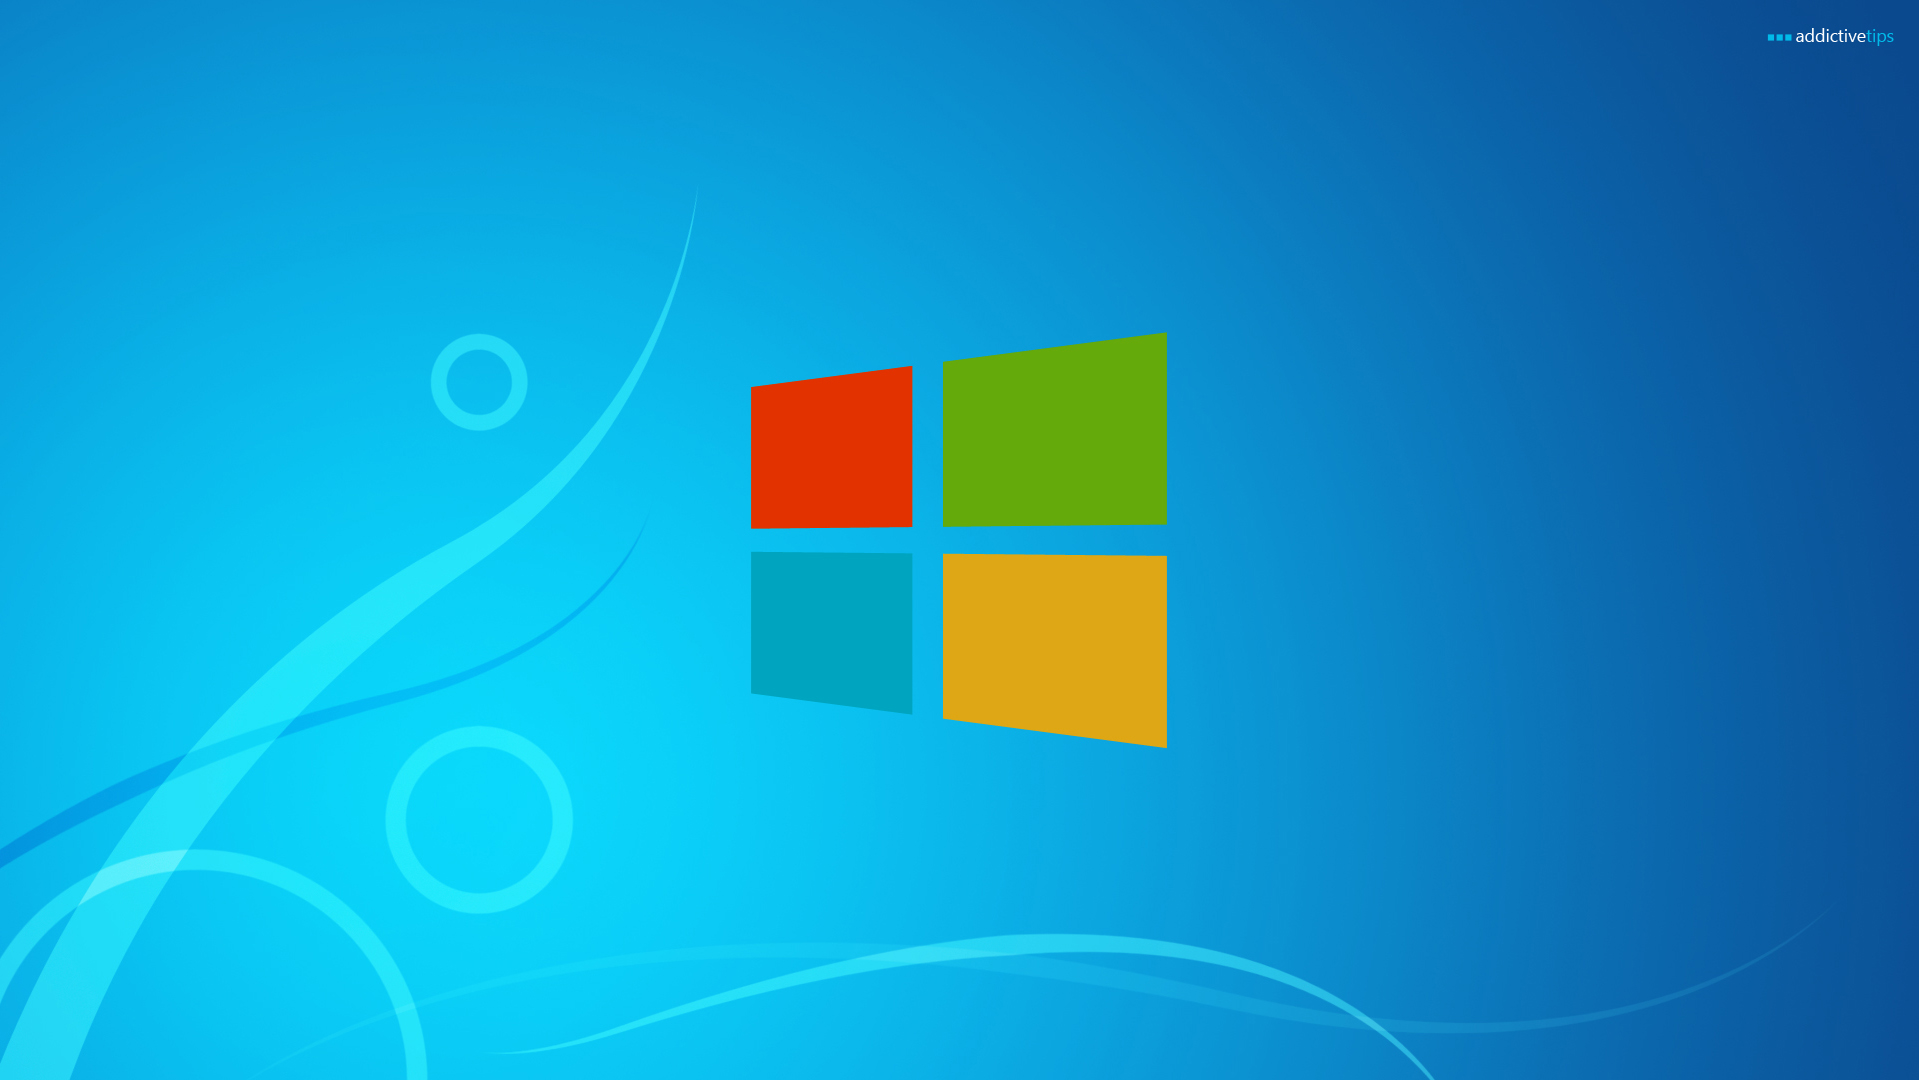 Tải về miễn phí Windows 8 Wallpaper: Hãy cập nhật màn hình desktop của bạn với những hình ảnh đẹp từ Windows 8 Wallpaper. Tải hoàn toàn miễn phí và thưởng thức những tác phẩm nghệ thuật đầy màu sắc và phong phú. Đừng bỏ lỡ cơ hội để trang trí cho máy tính của bạn trở nên sáng và đẹp hơn bao giờ hết!